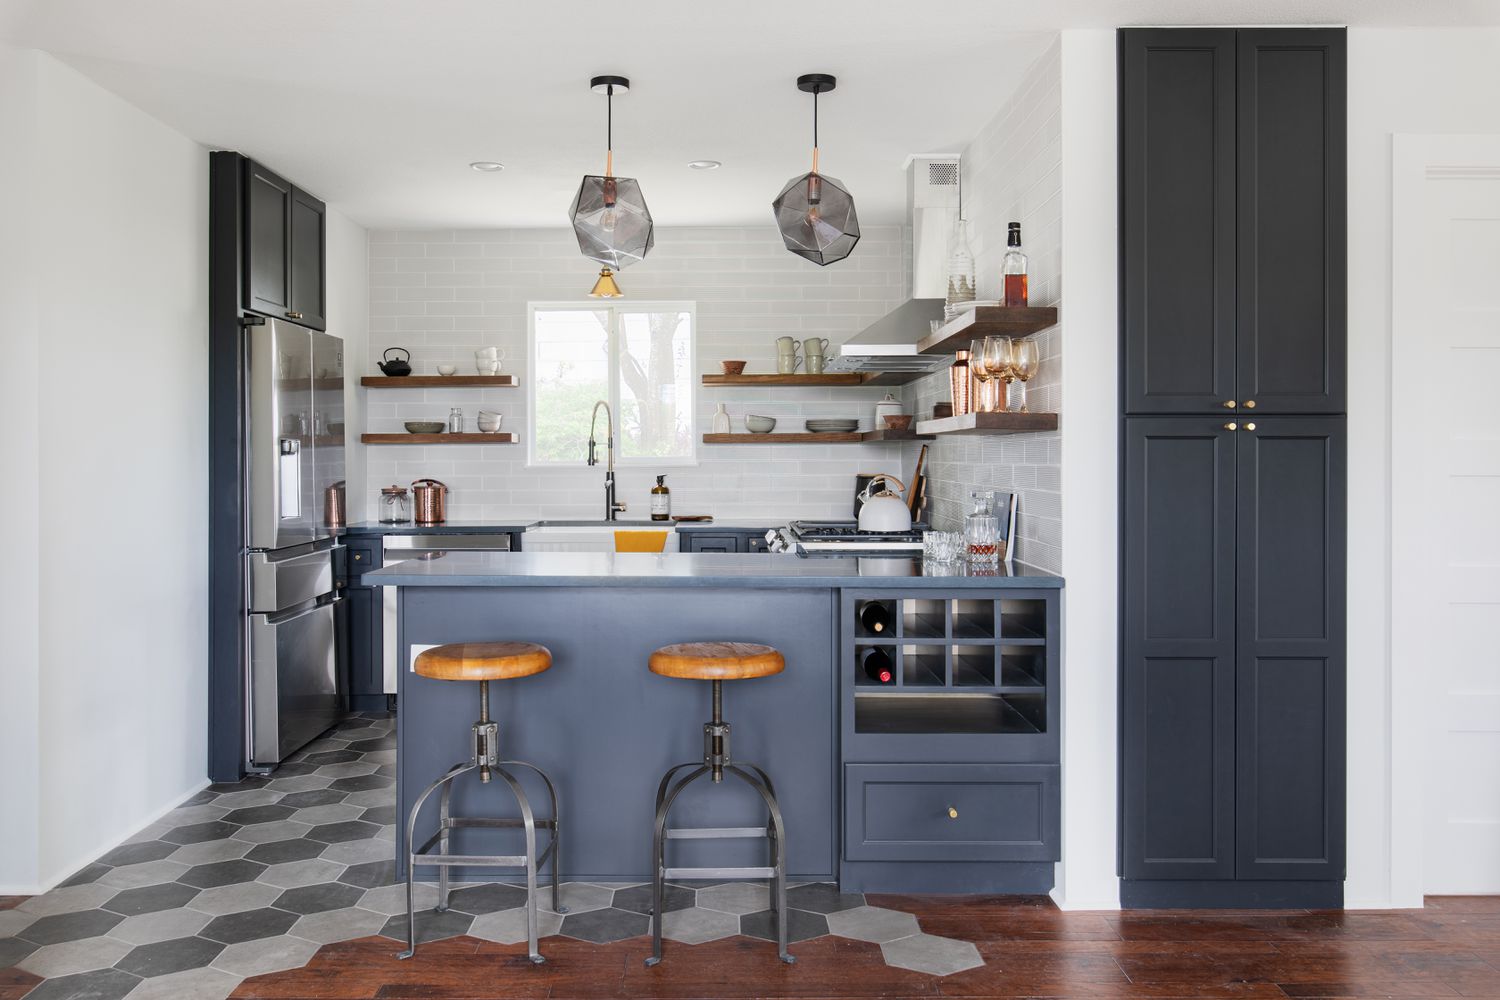 Un suelo de cocina de baldosas gris oscuro y gris claro se combina con armarios azul oscuro